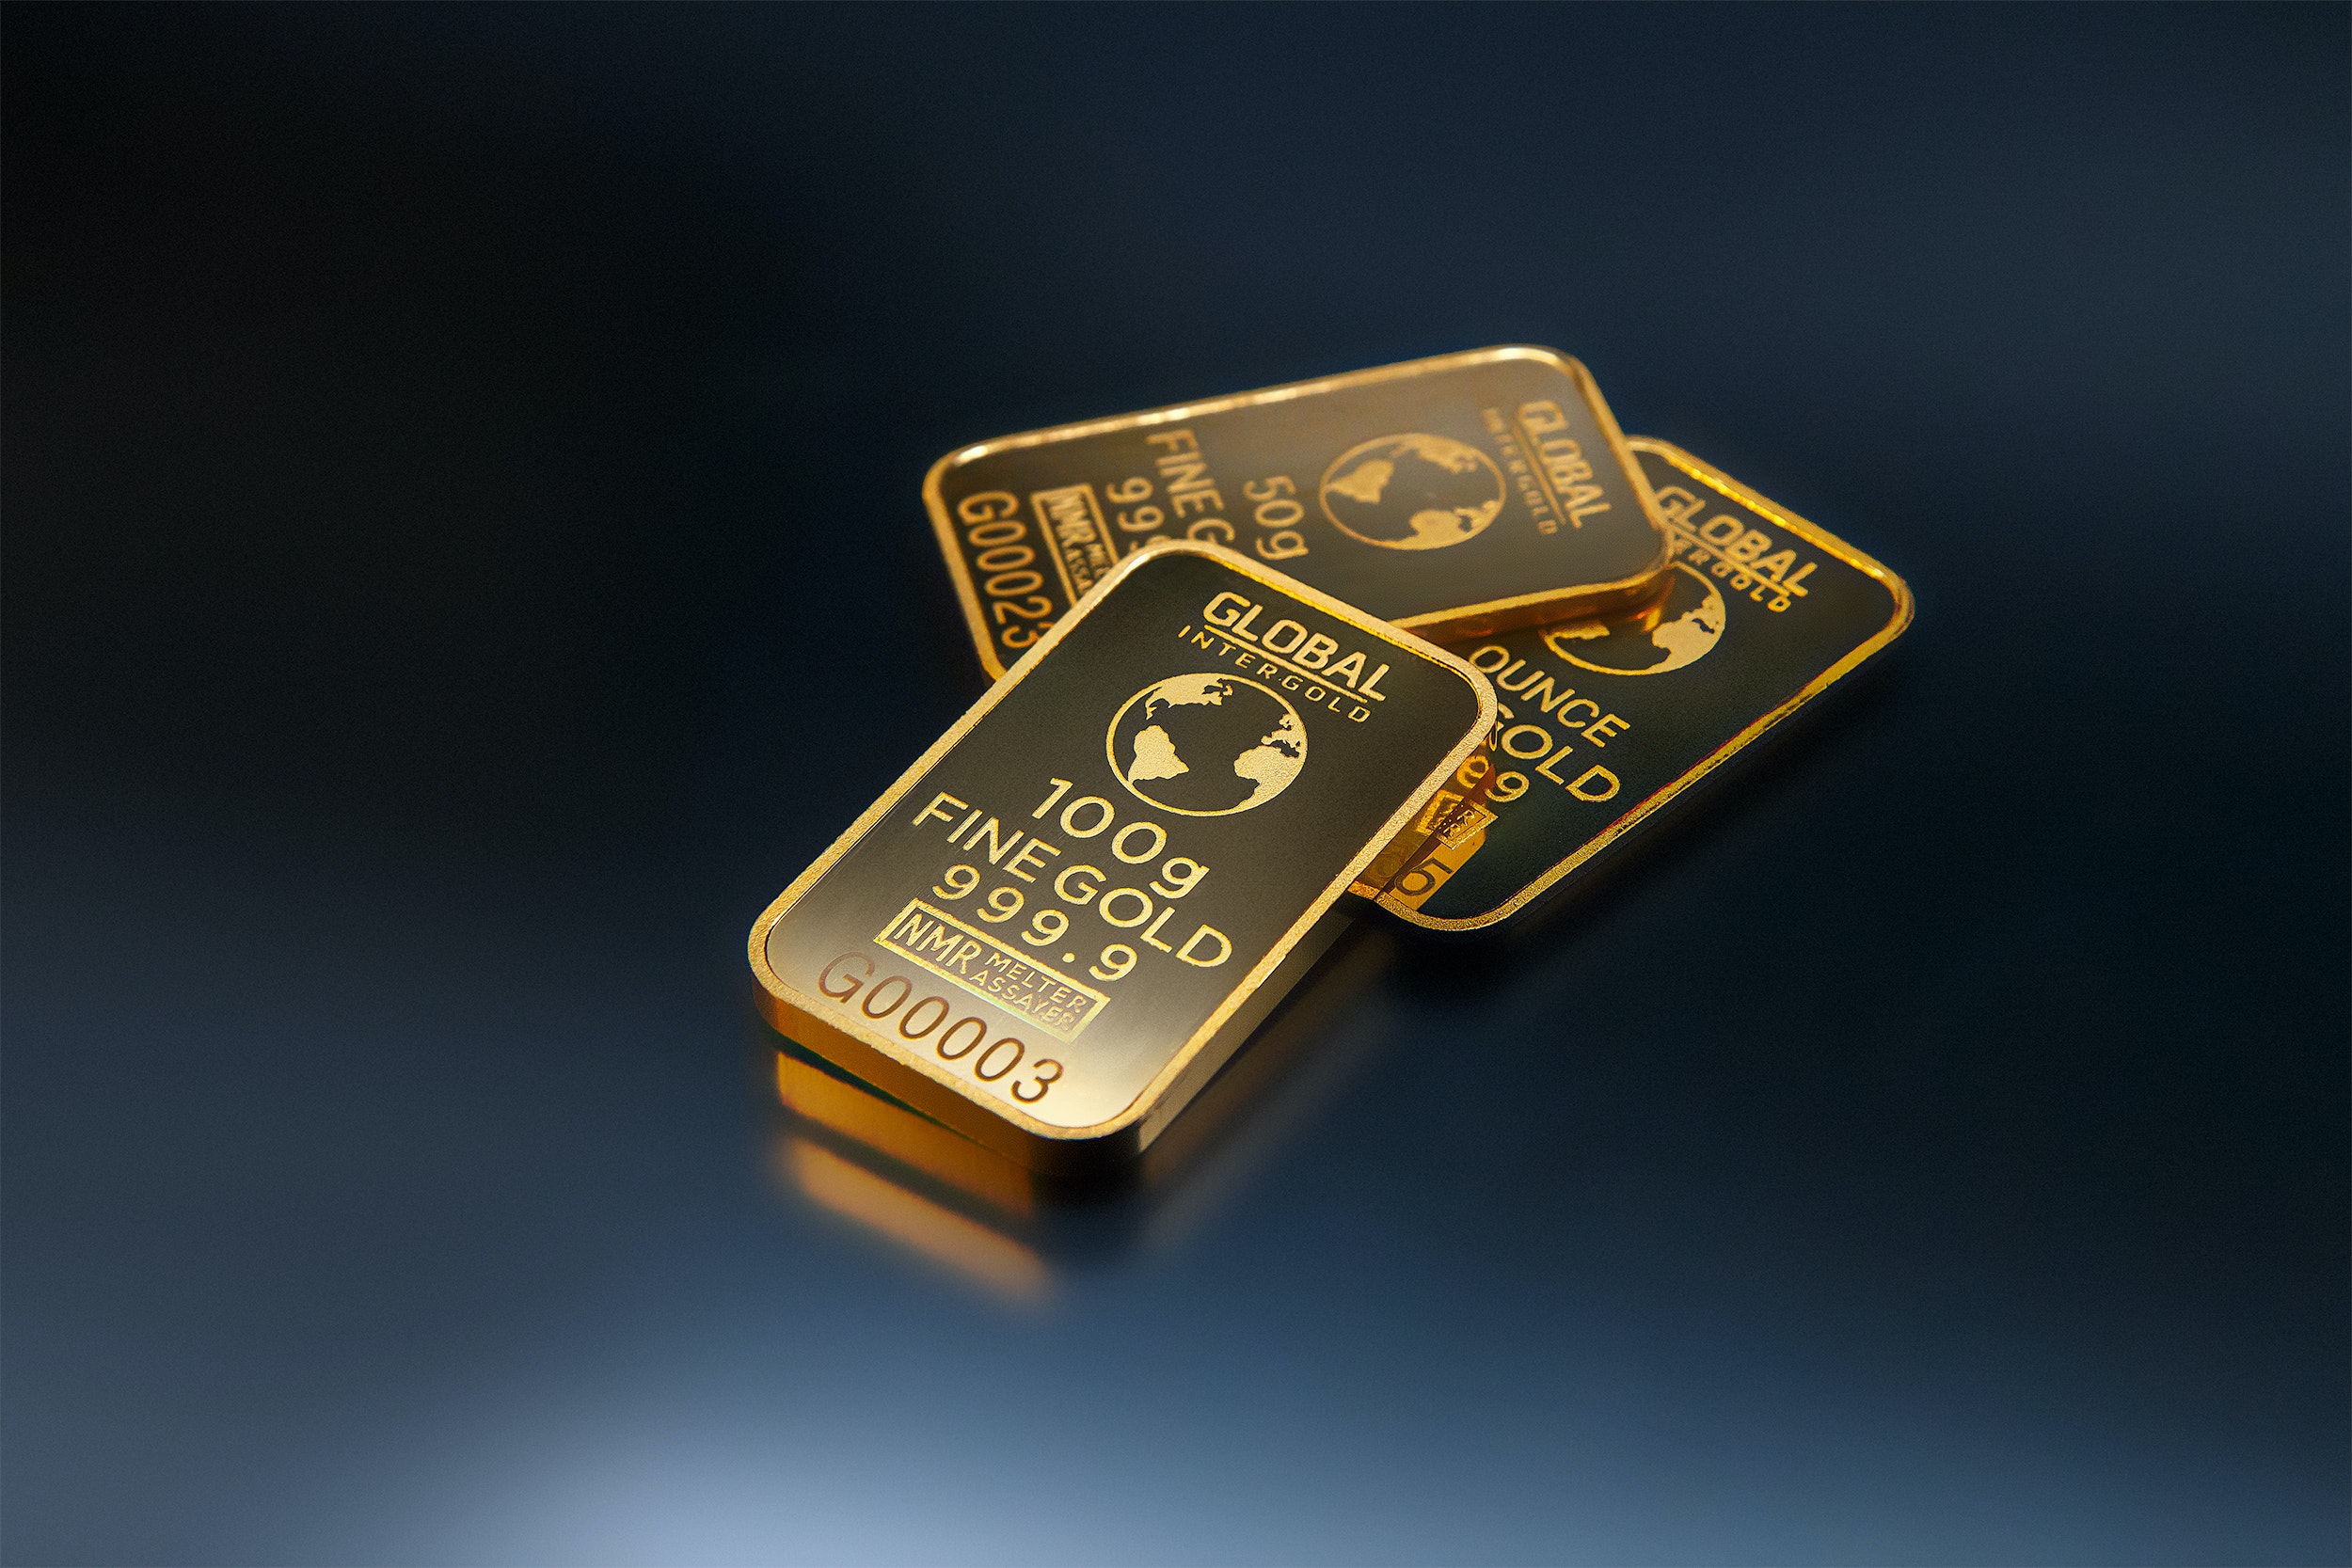  Existieron caídas importantes en el oro, el bitcoin y el petróleo en la semana 29 de agosto - 02 de septiembre Fiduvalor